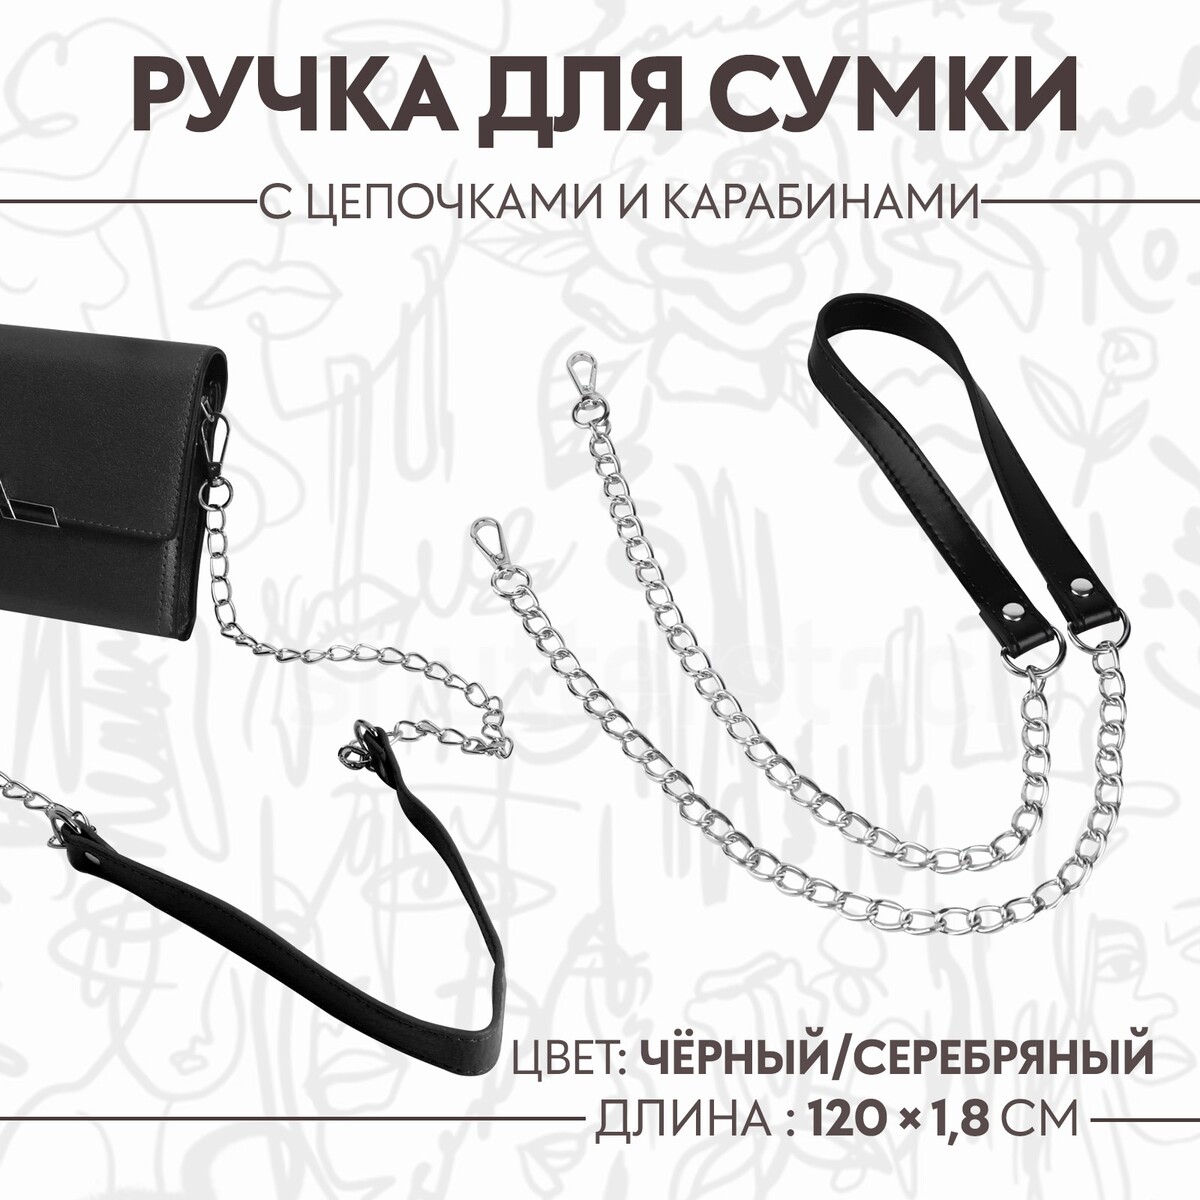 Ручка для сумки, с цепочками и карабинами, 120 × 1,8 см, цвет черный ручка для сумки с плоскими цепочками и карабинами 120 × 3 см серебряный